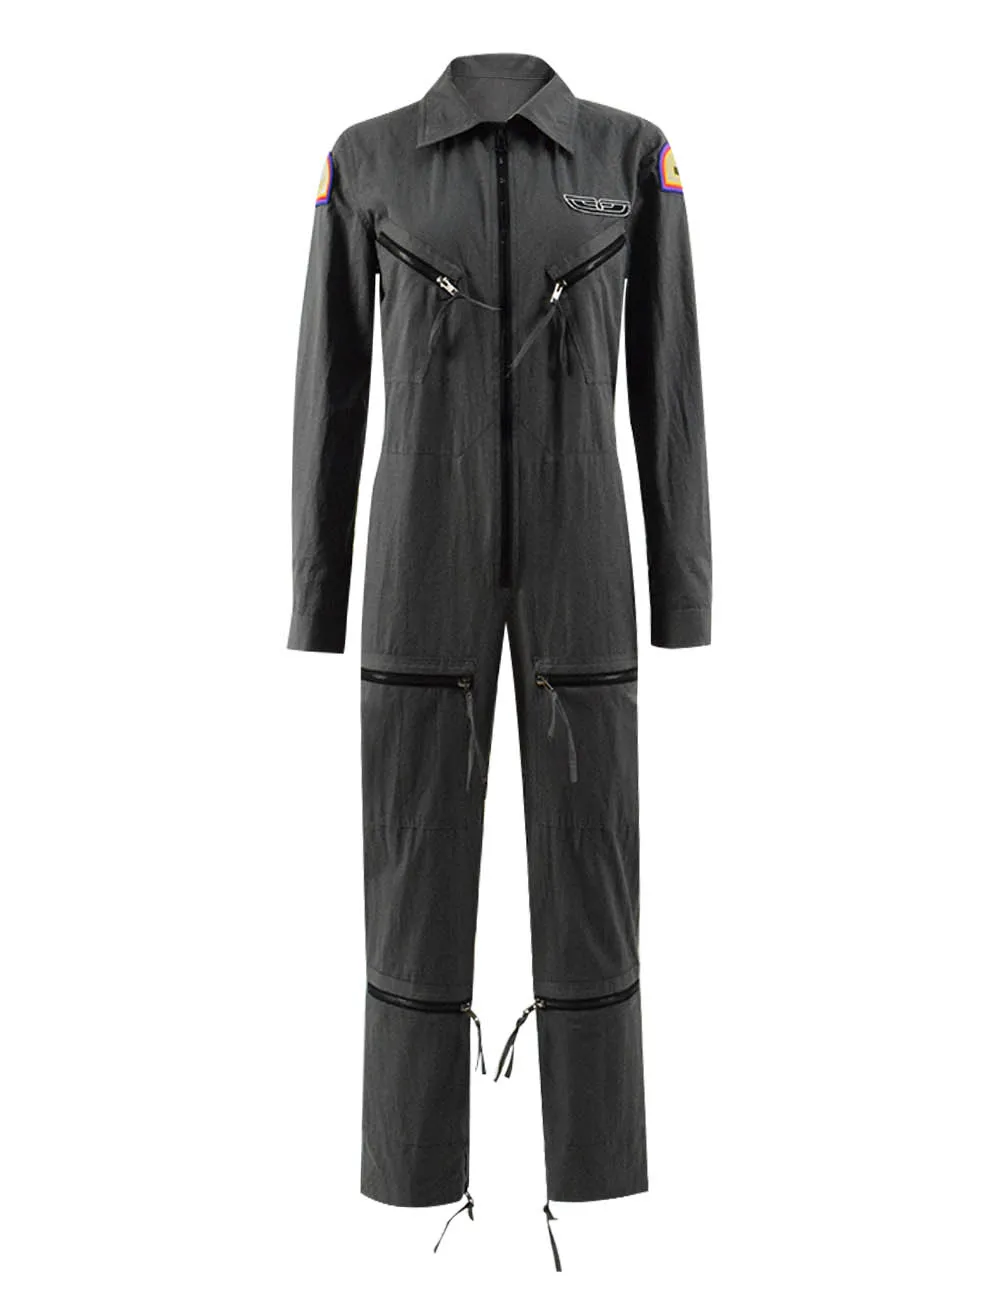 

Cosdaddy Ellen Ripley Carnival Tiojacket Letnal Pilot Jacket With Zipper Women Astronaut Uniform